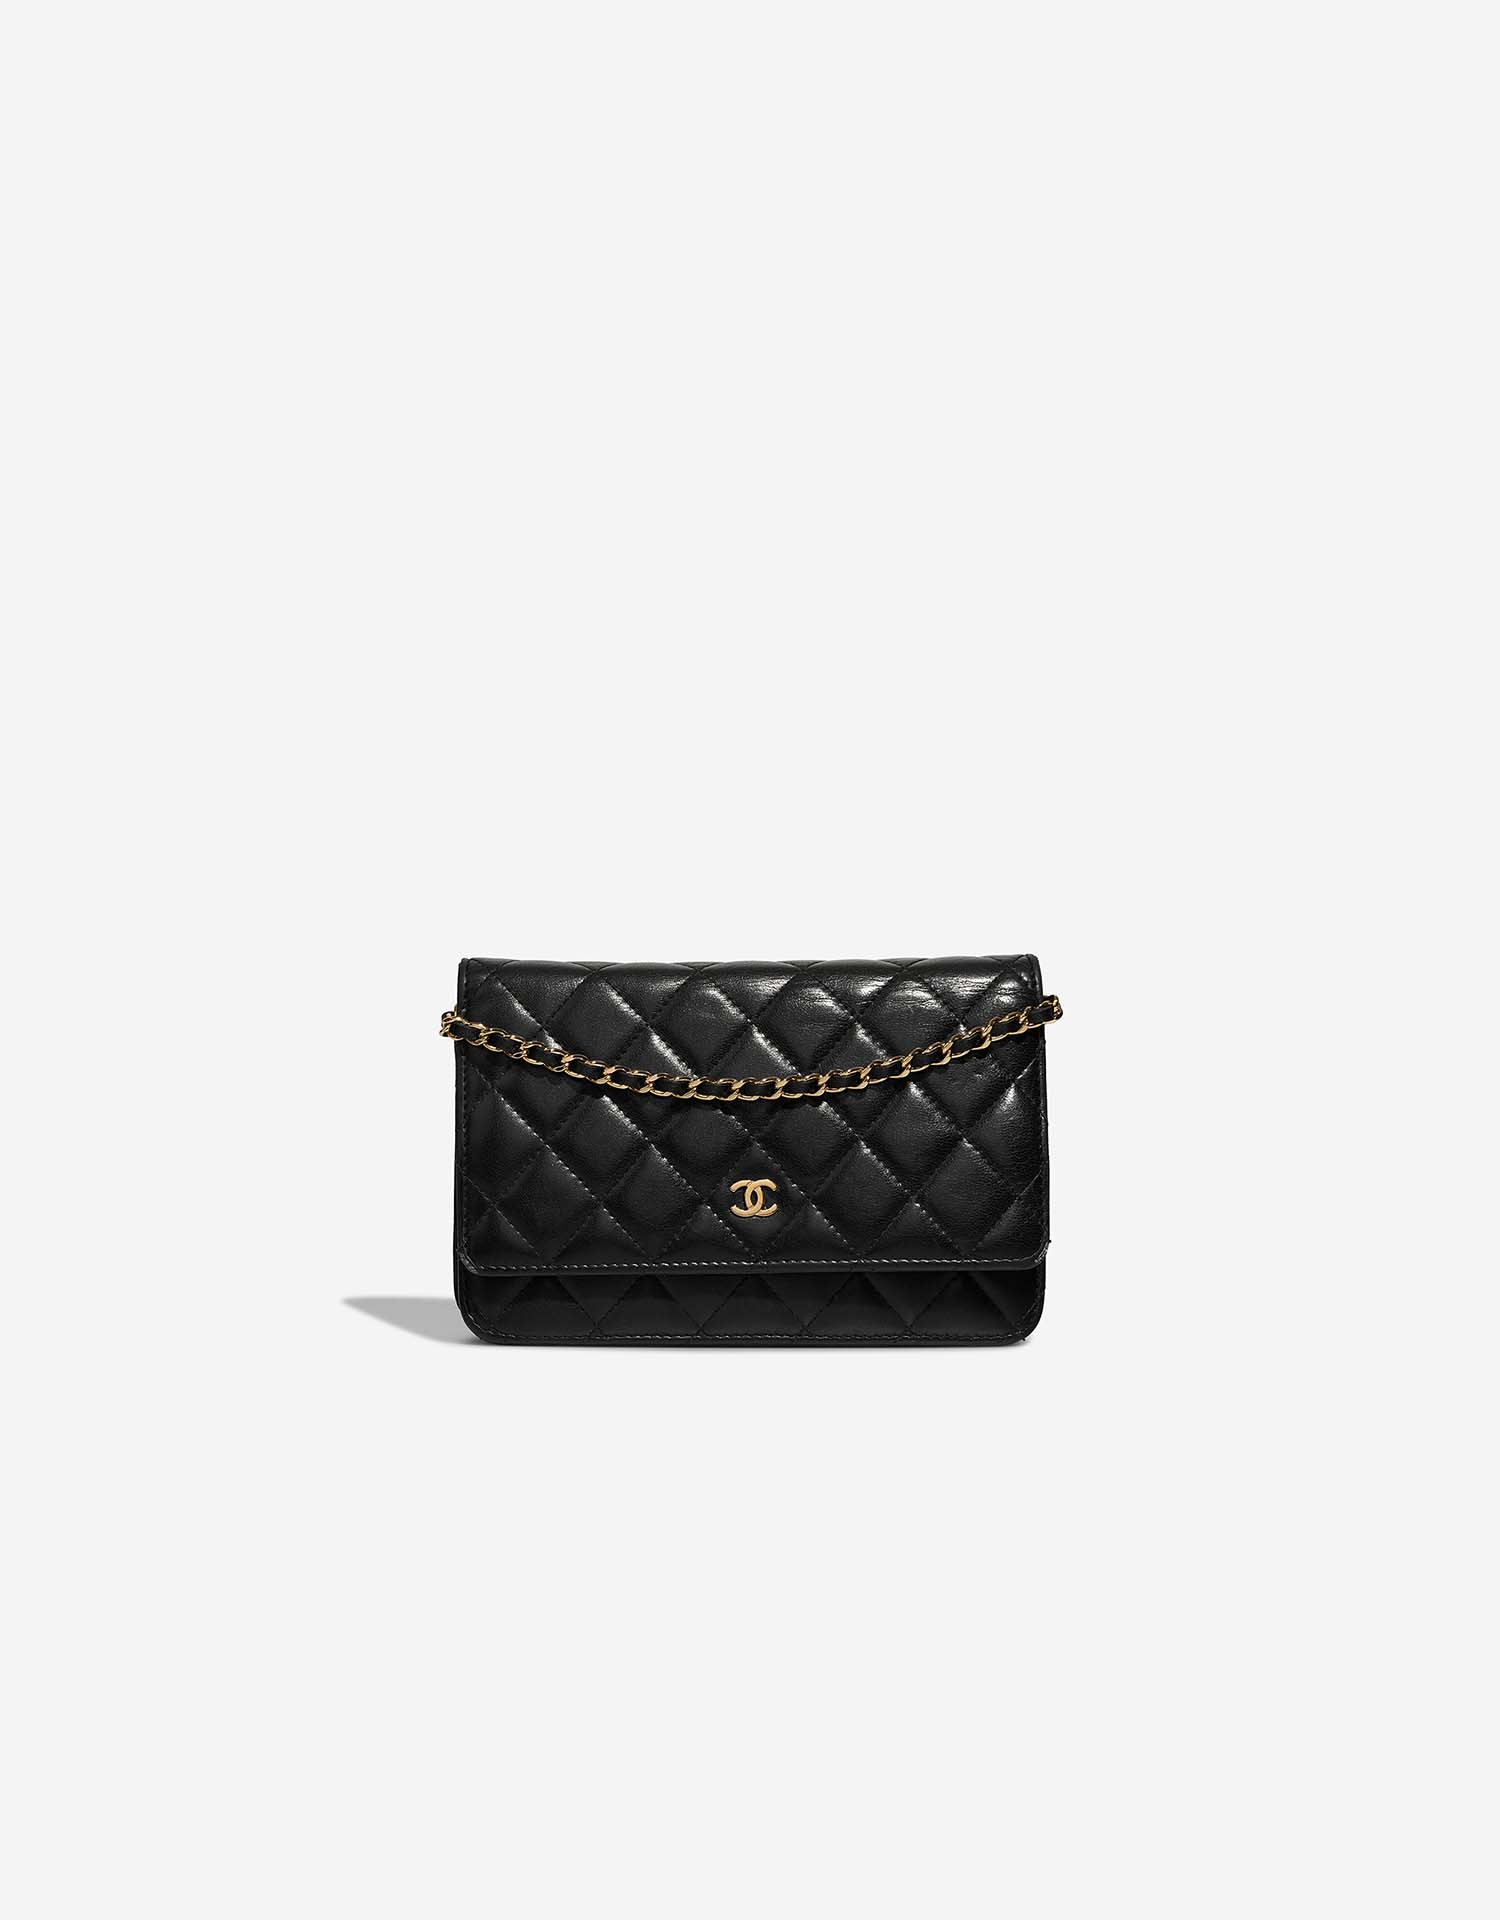 chanel wallet bag black